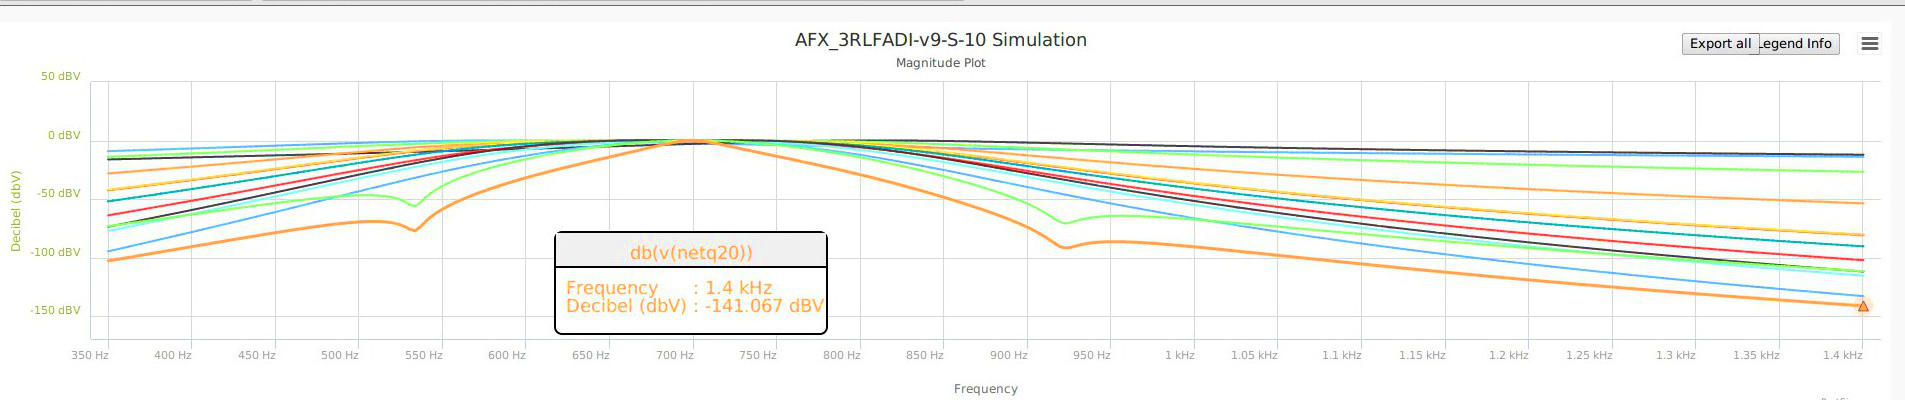 AFX_3RLFADI-v9-M-10-160715-1845-Q20-1400.jpg